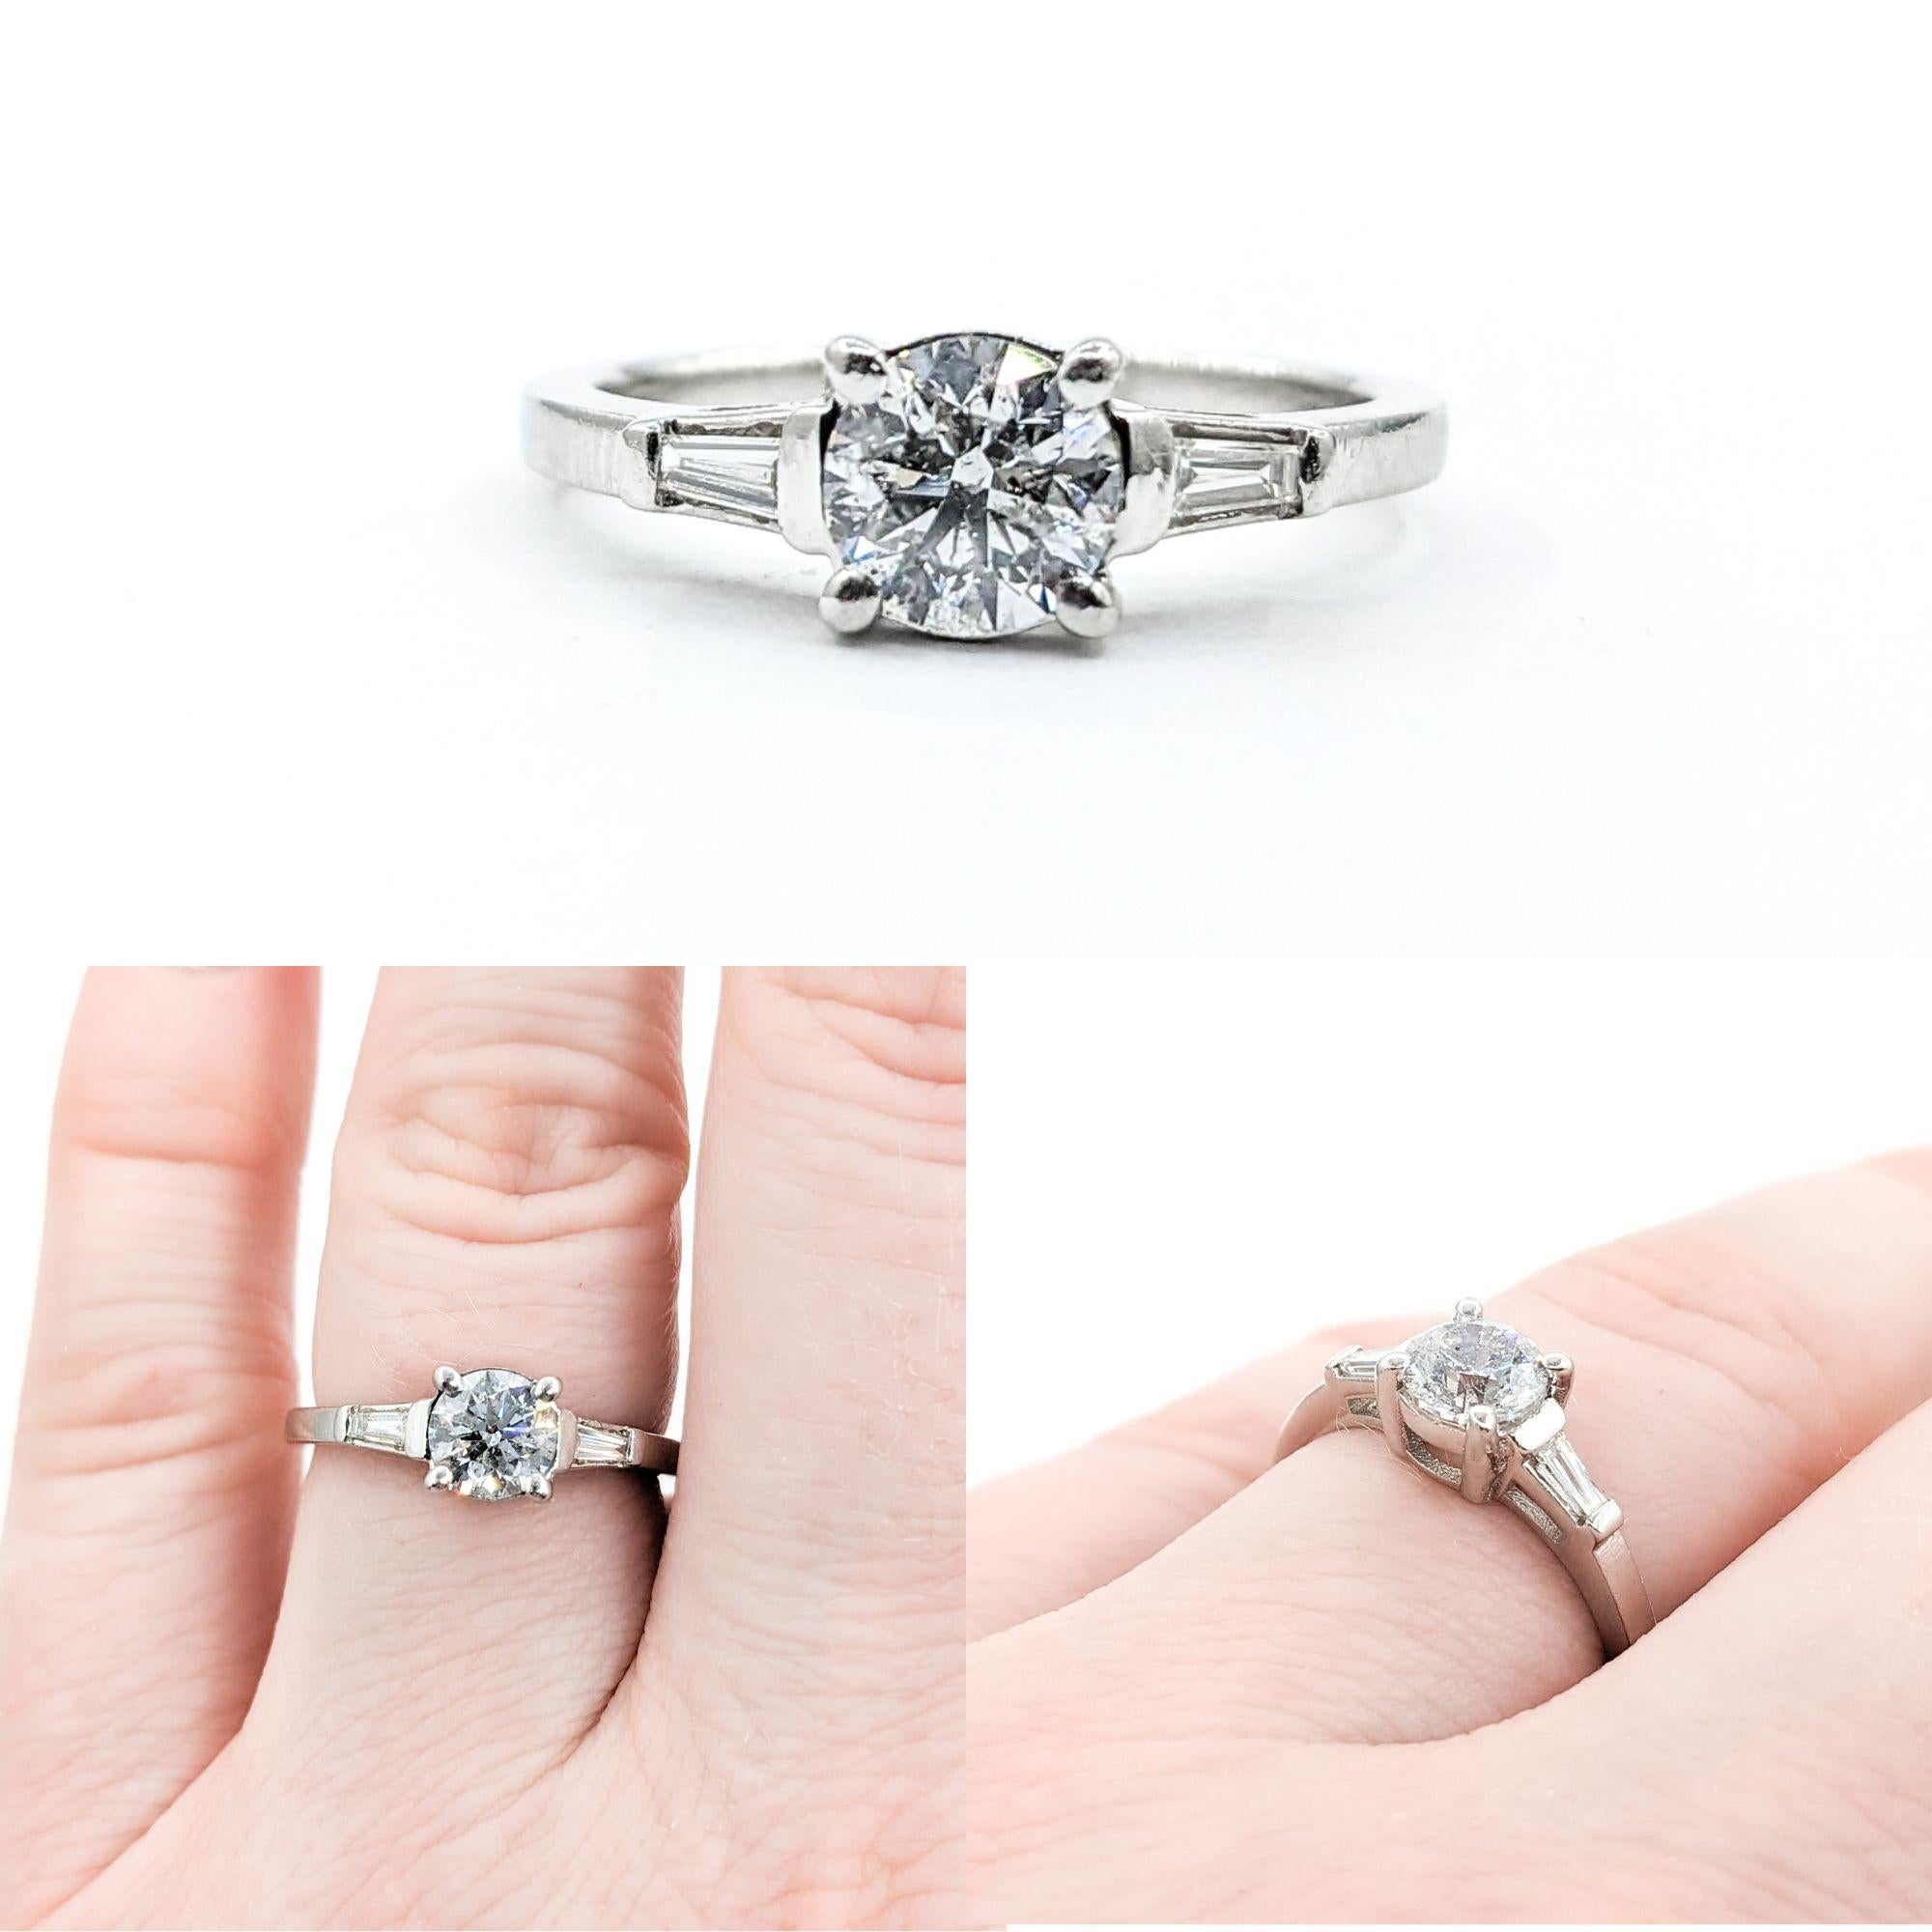 Vintage 3-Stein-Design Diamant-Verlobungsring in Platin

Wir stellen einen exquisiten Diamant-Verlobungsring vor, der fachmännisch aus 950pt Platin gefertigt ist. Dieser elegante Ring präsentiert 0,94 ct Diamanten in einem 3-Stein-Design im